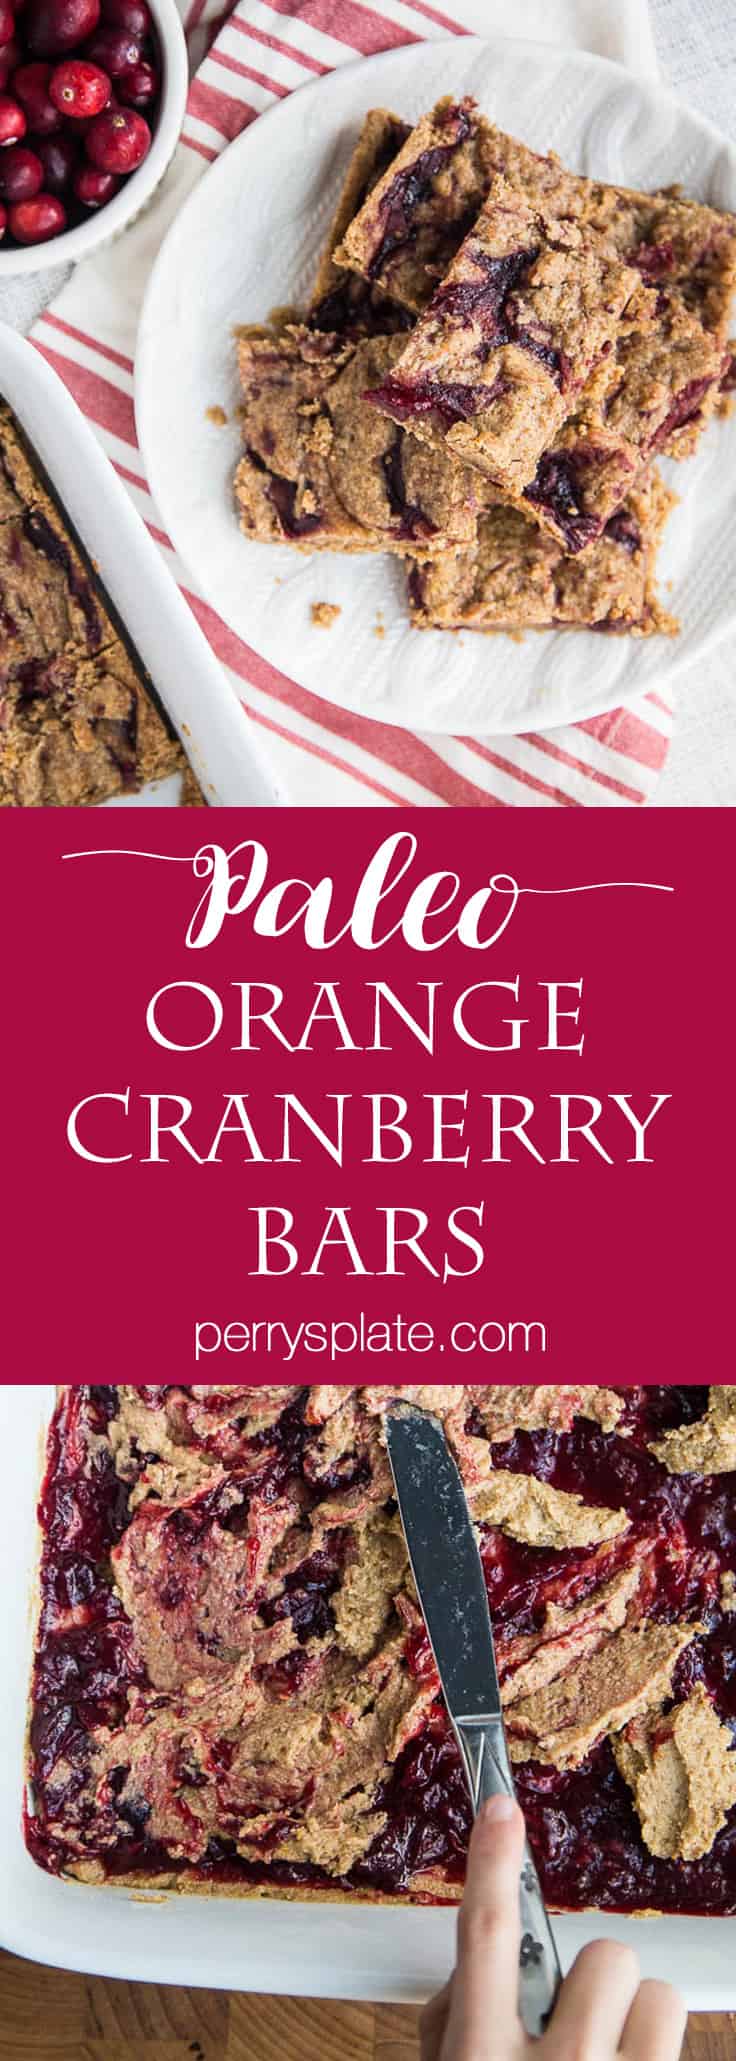 Paleo Orange Cranberry Bars | paleo dessert recipes | leftover cranberry sauce recipes | orange recipes | gluten-free recipes | dairy-free recipes | perrysplate.com 